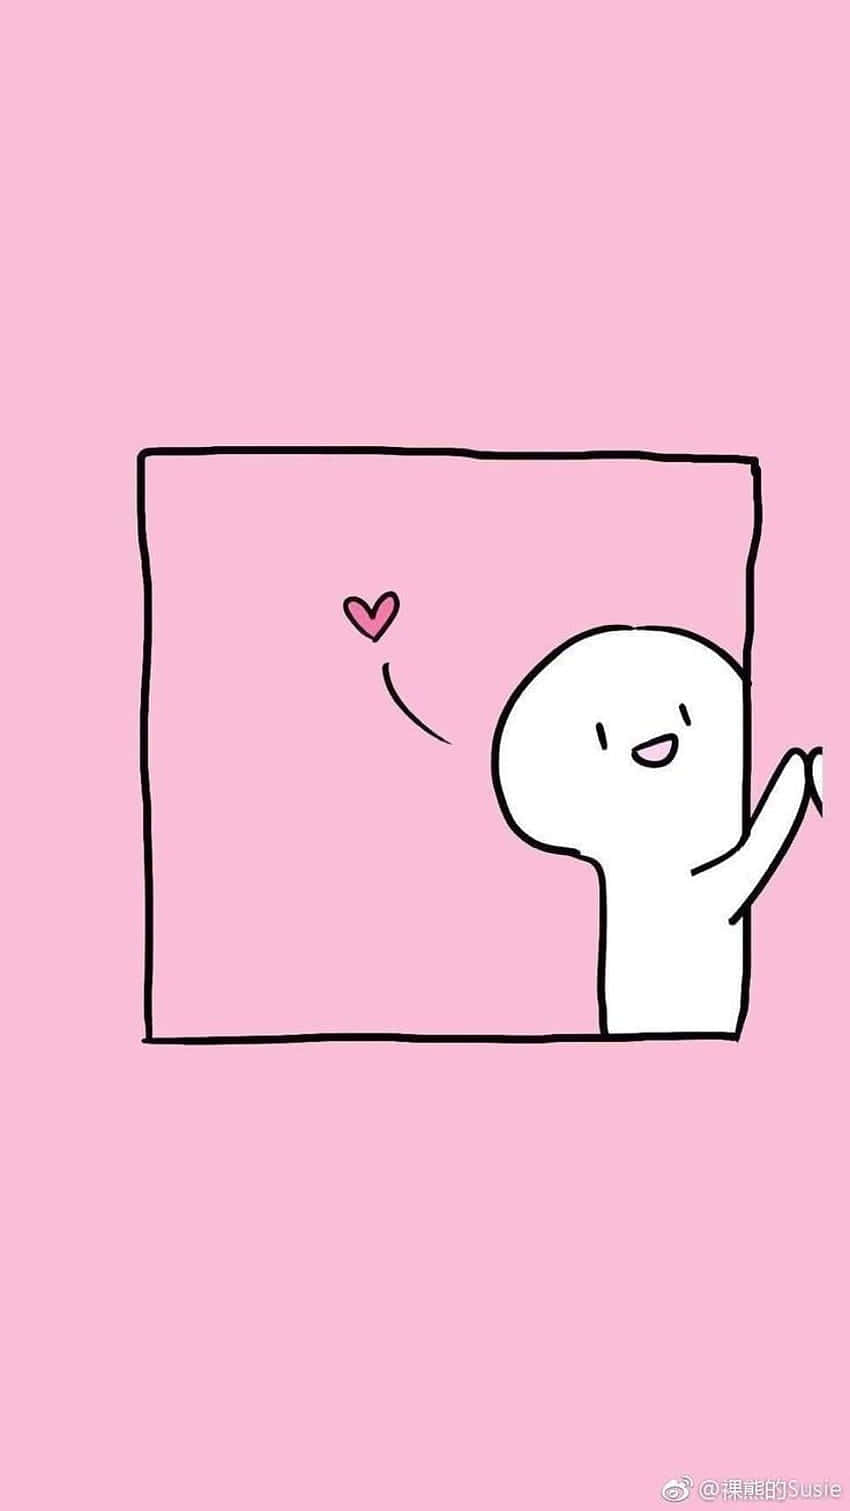 Pink And Cute Matching Best Friend Home Screen Idea Wallpaper